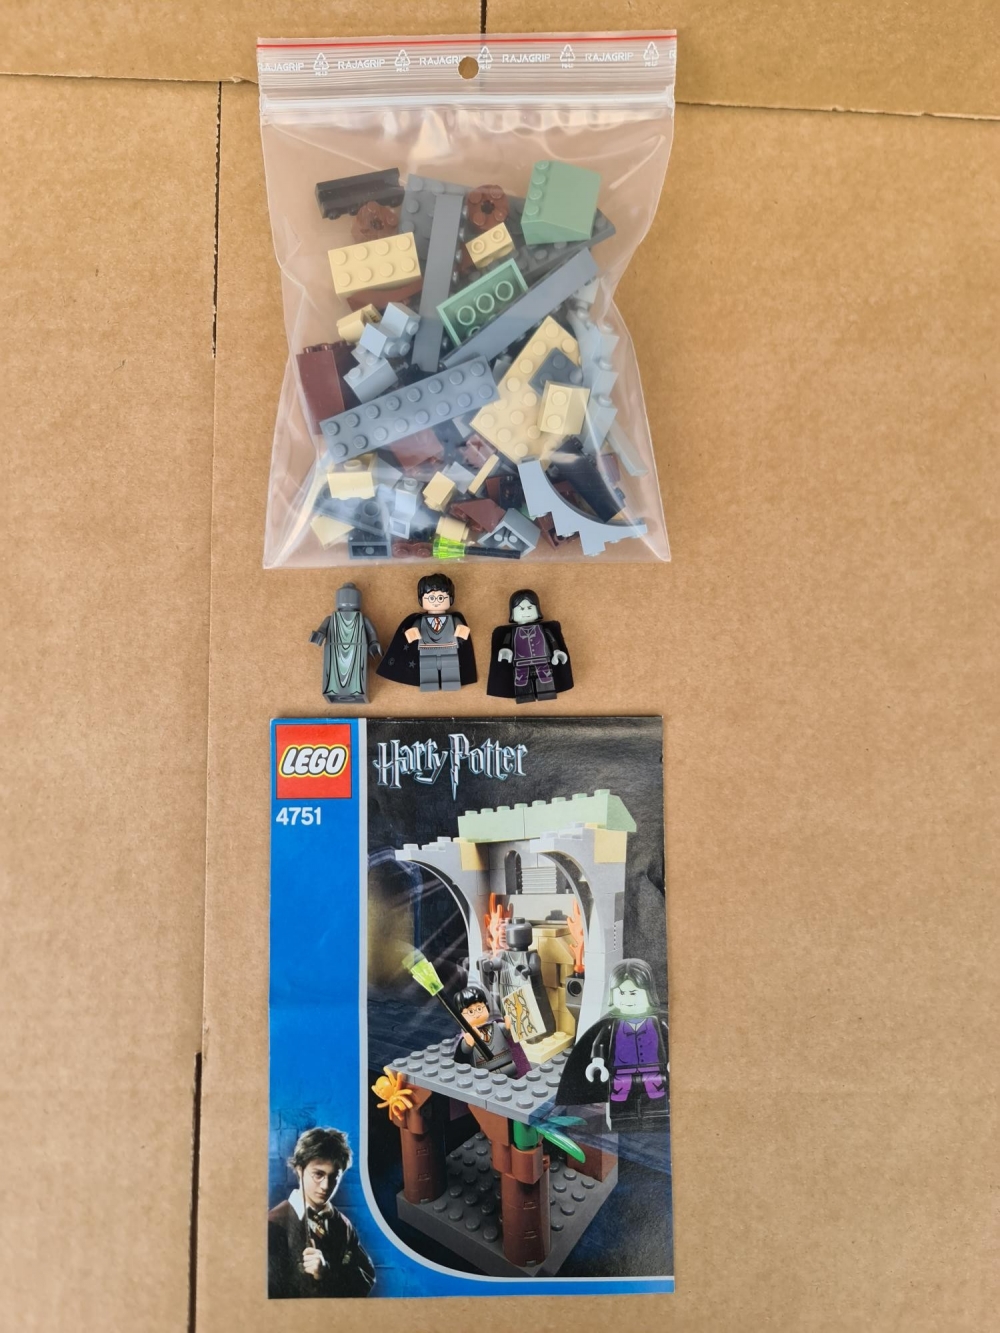 Sett 4751 fra Lego Harry Potter : Prisoner of Azkaba serien.
Meget pent.
Komplett med manual.